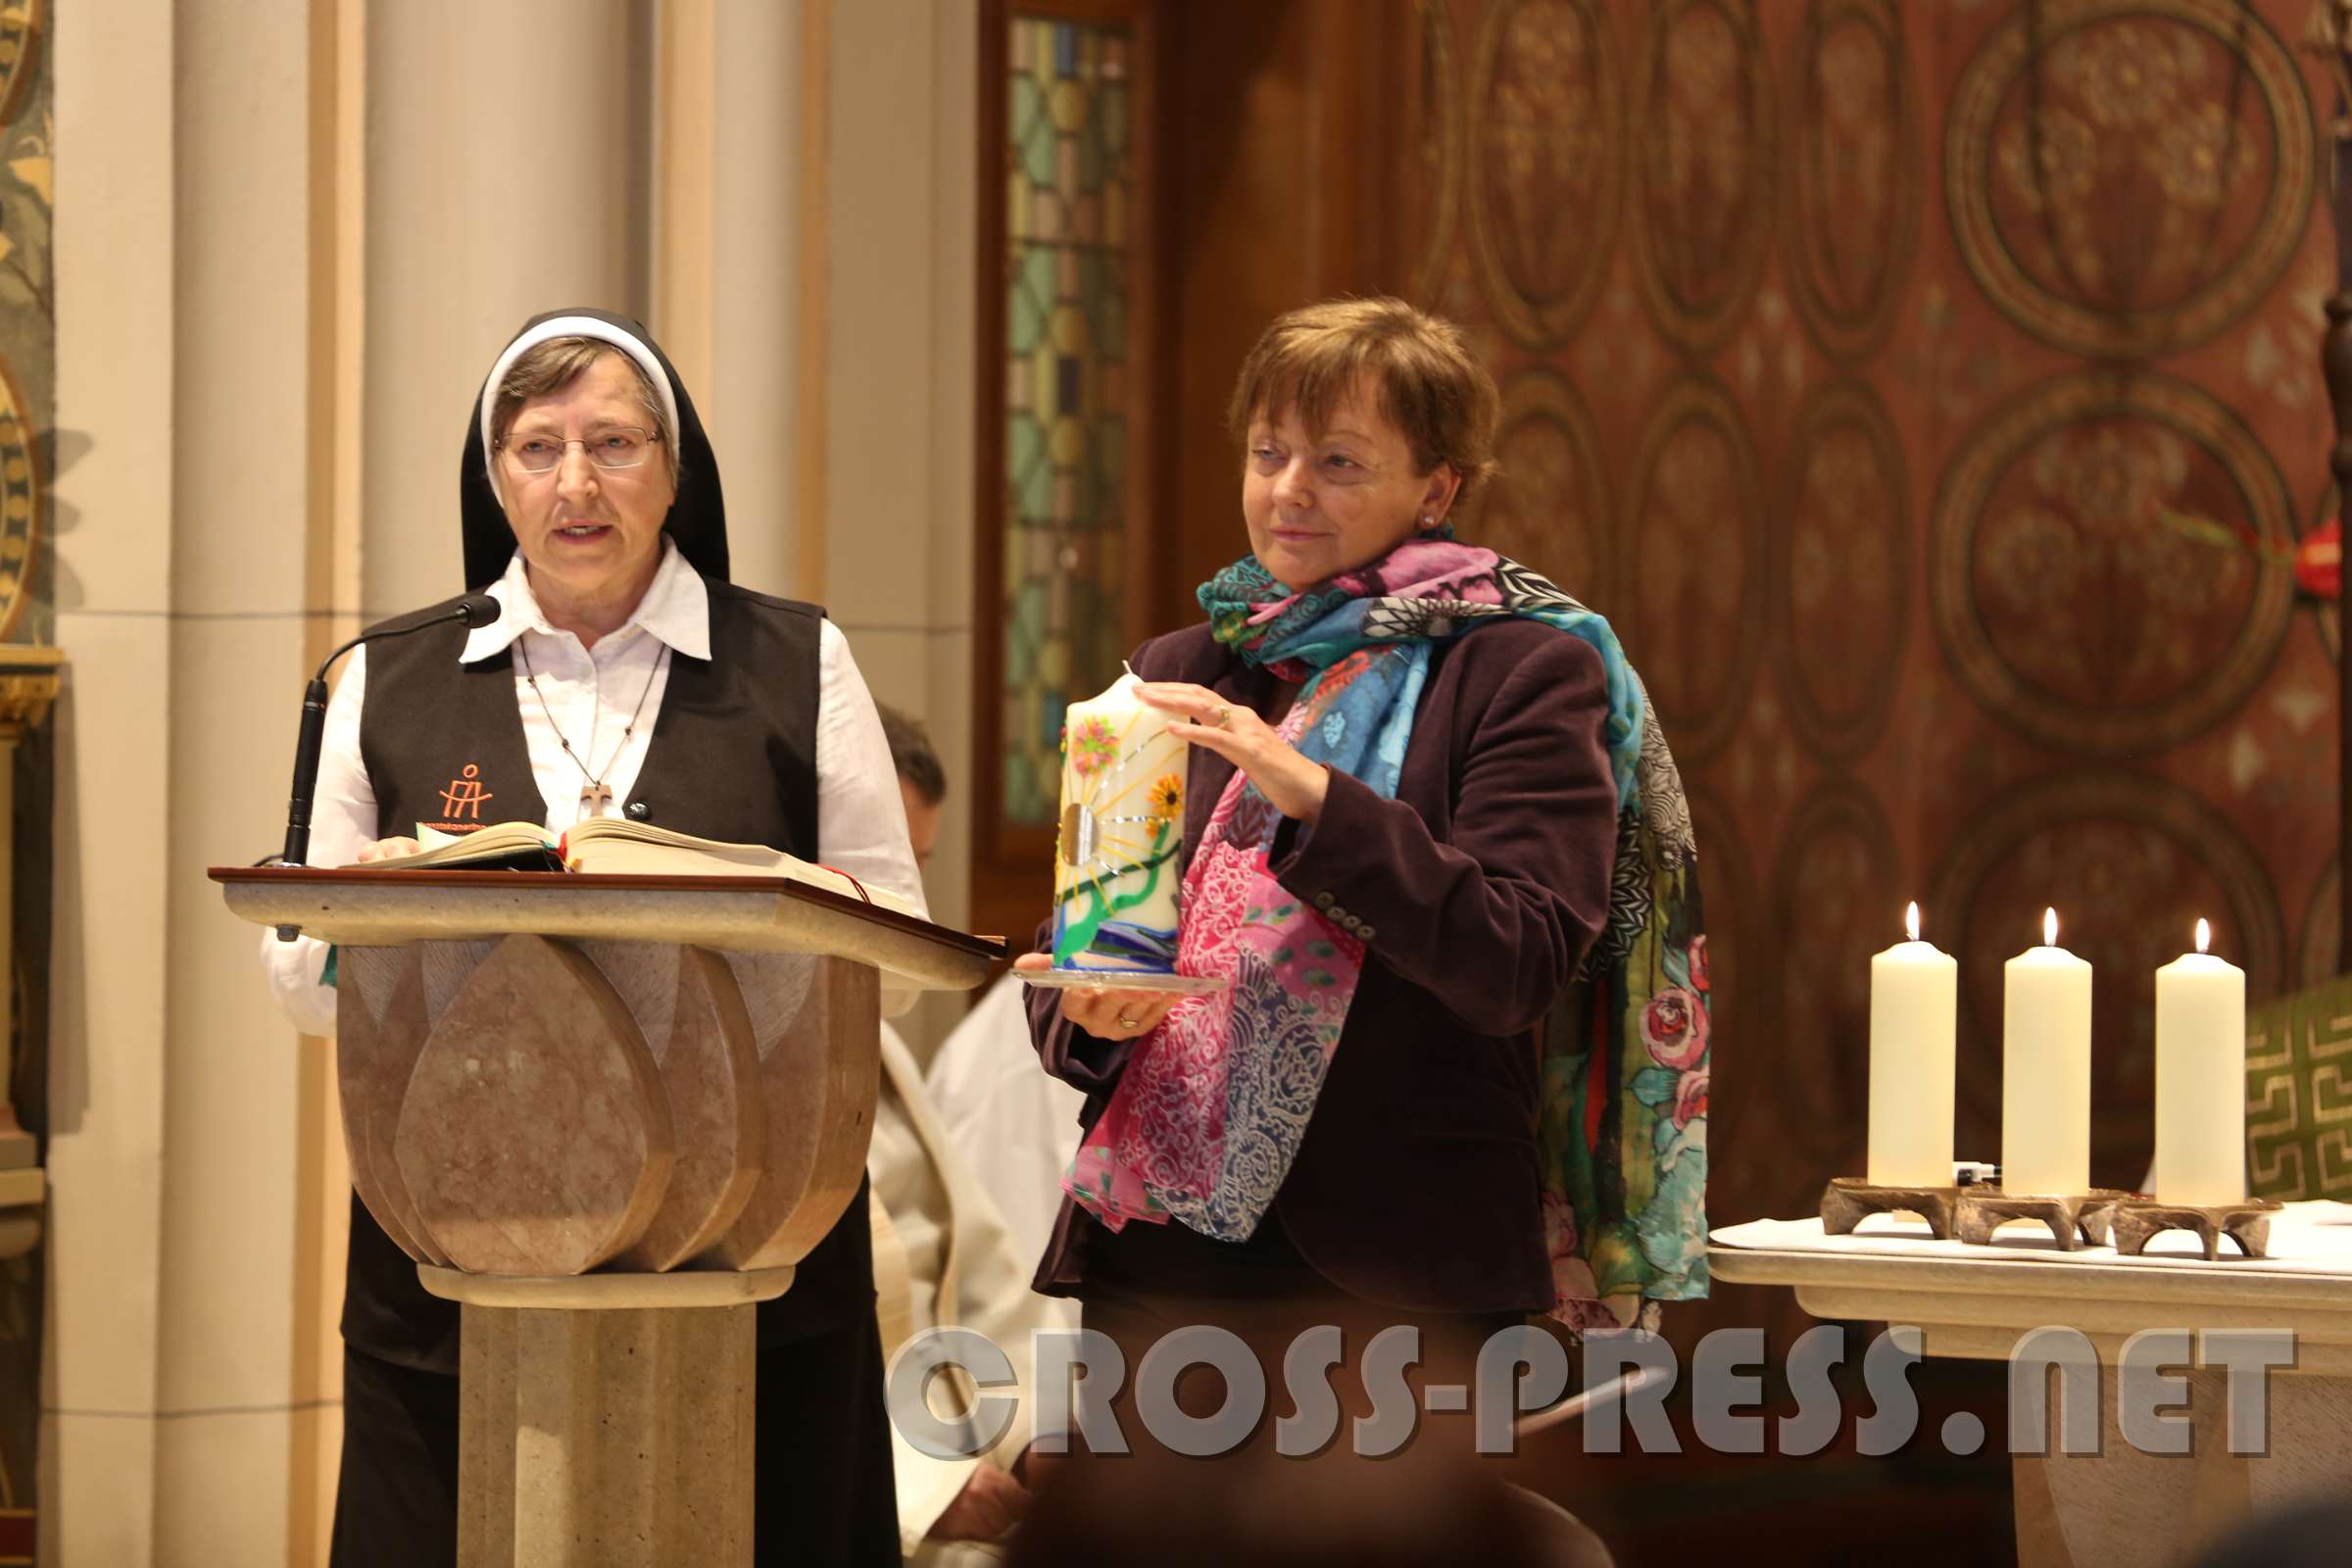 WiederEröffnung der KlosterKirche Generaloberin Schwester Franziska berichtet, wie durch die erfahrene Solidarität ein Freundeskreis entstanden sei. Hier die Kerze der "Initiative Freundeskreis mit den Franziskanerinnen Amstetten".